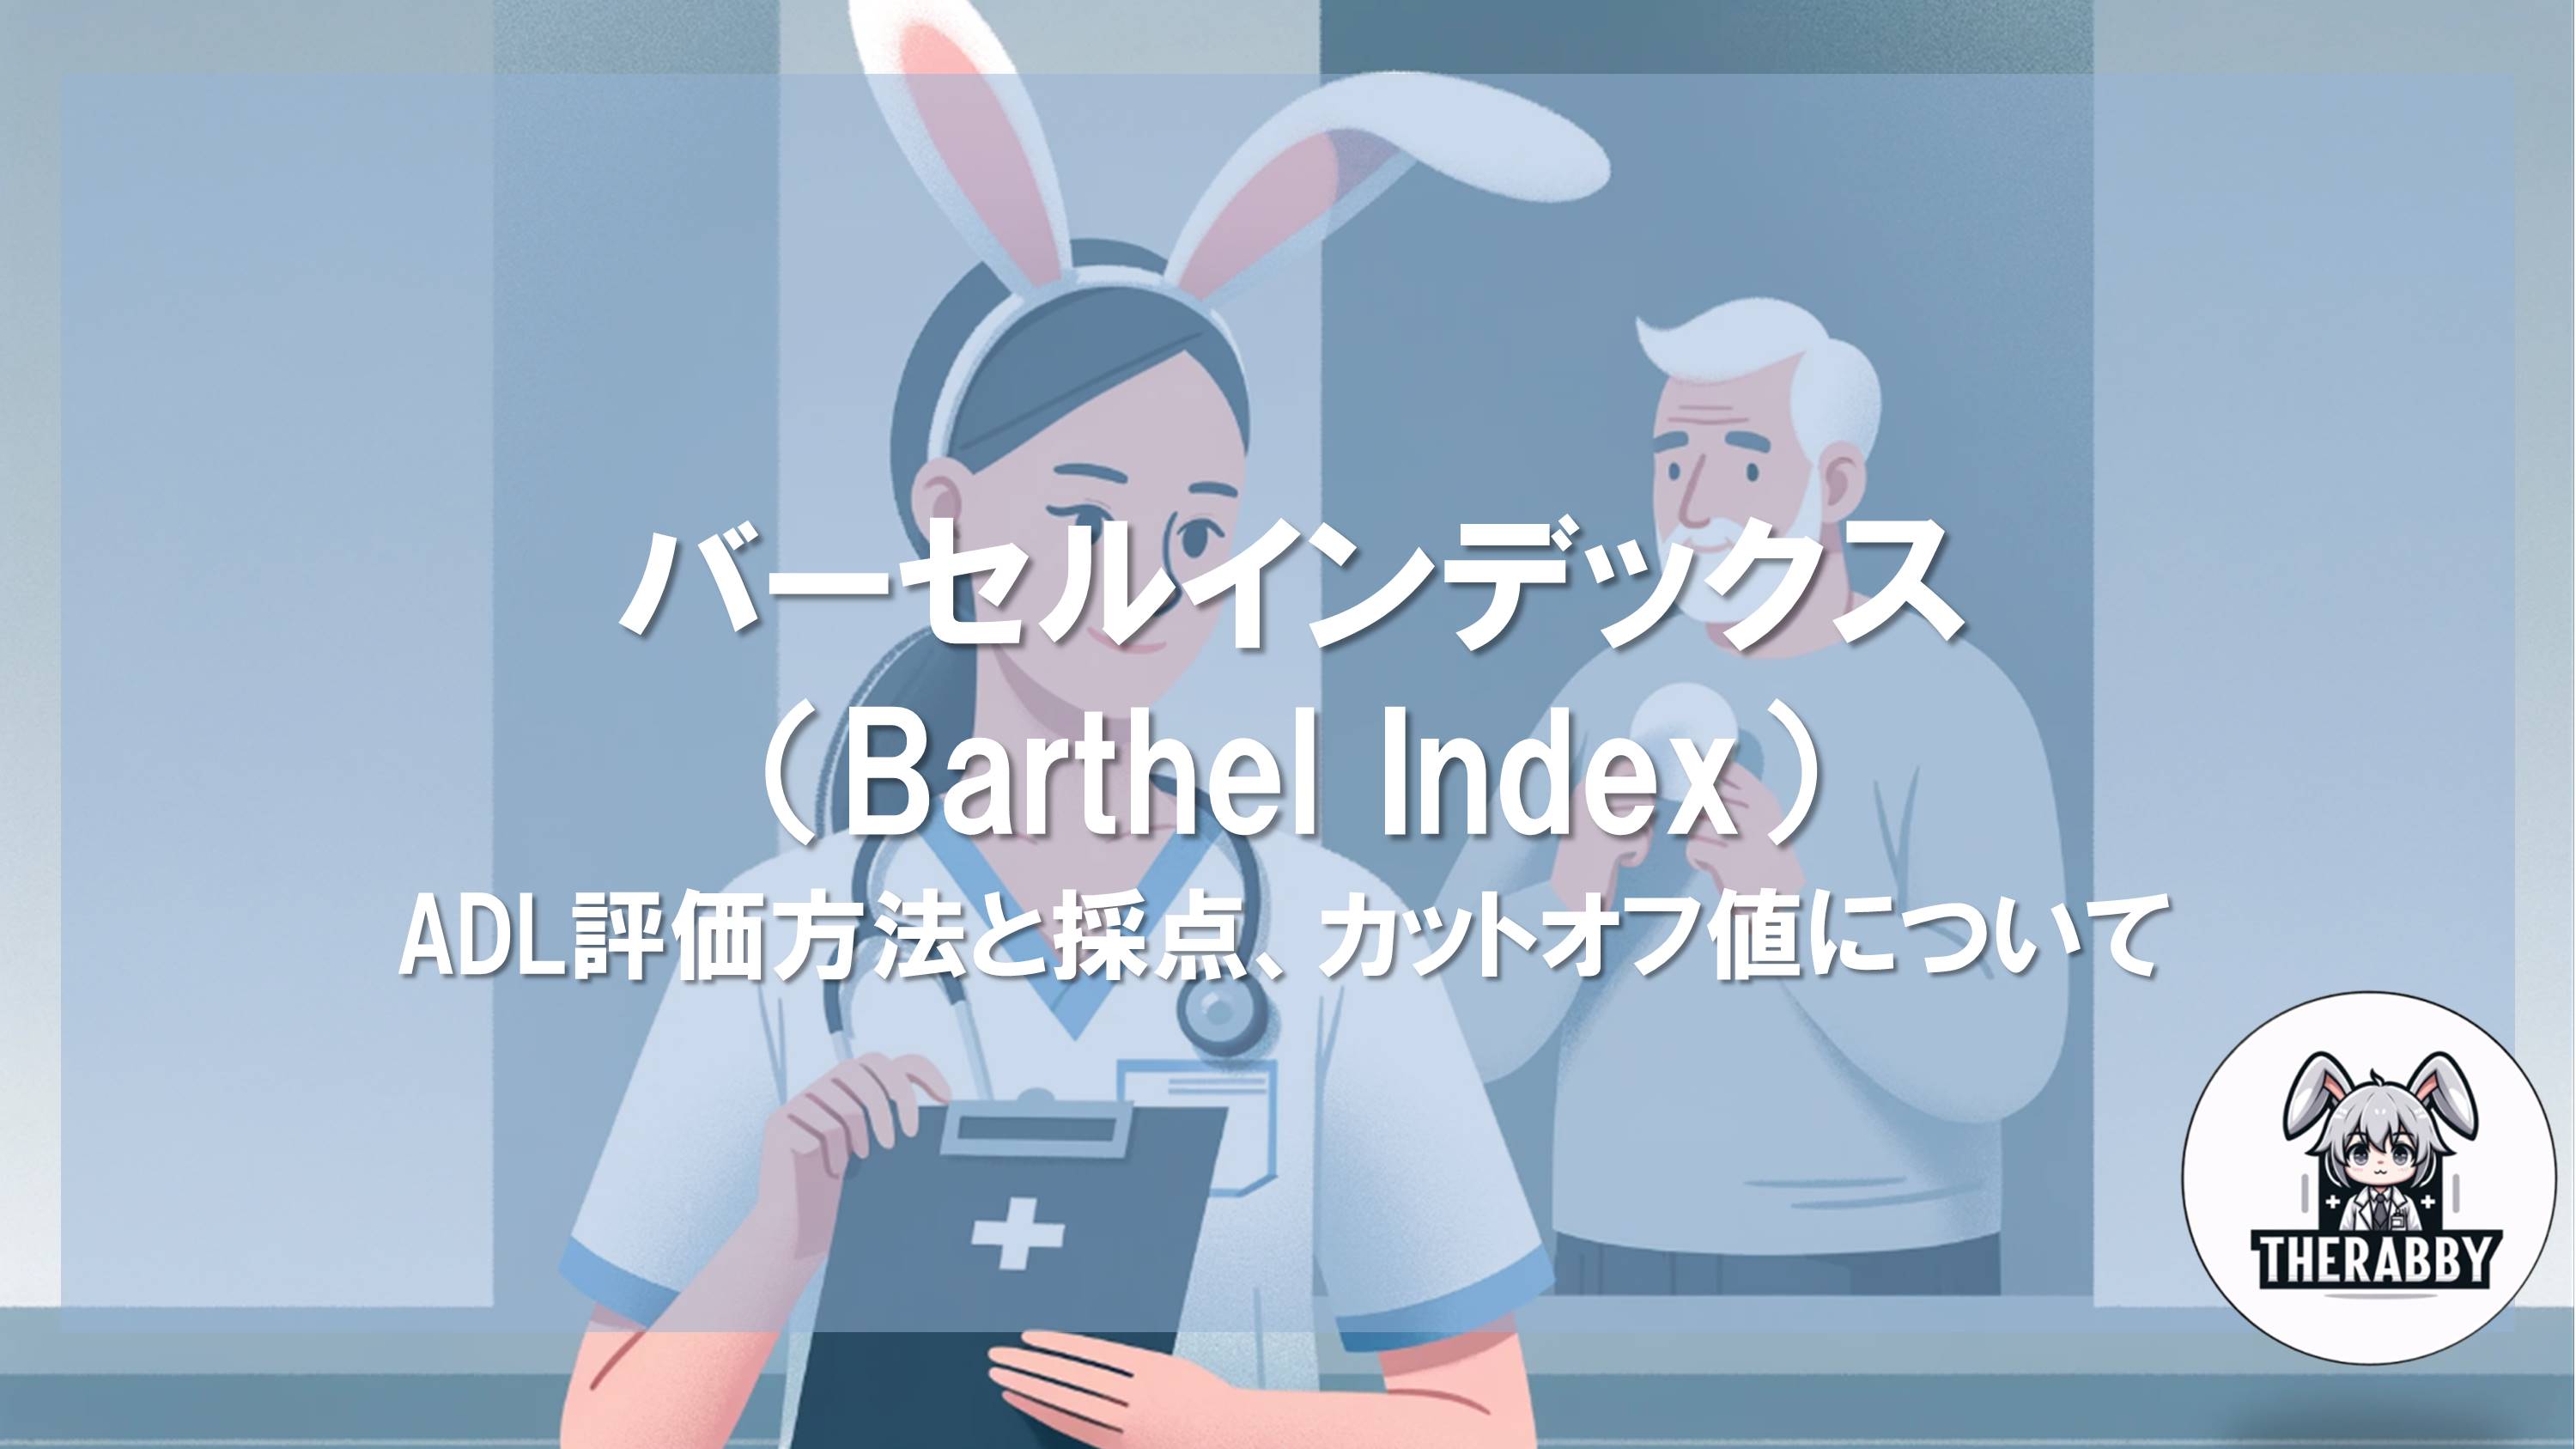 バーセルインデックス（Barthel Index）- ADL評価方法と採点、カットオフ値について